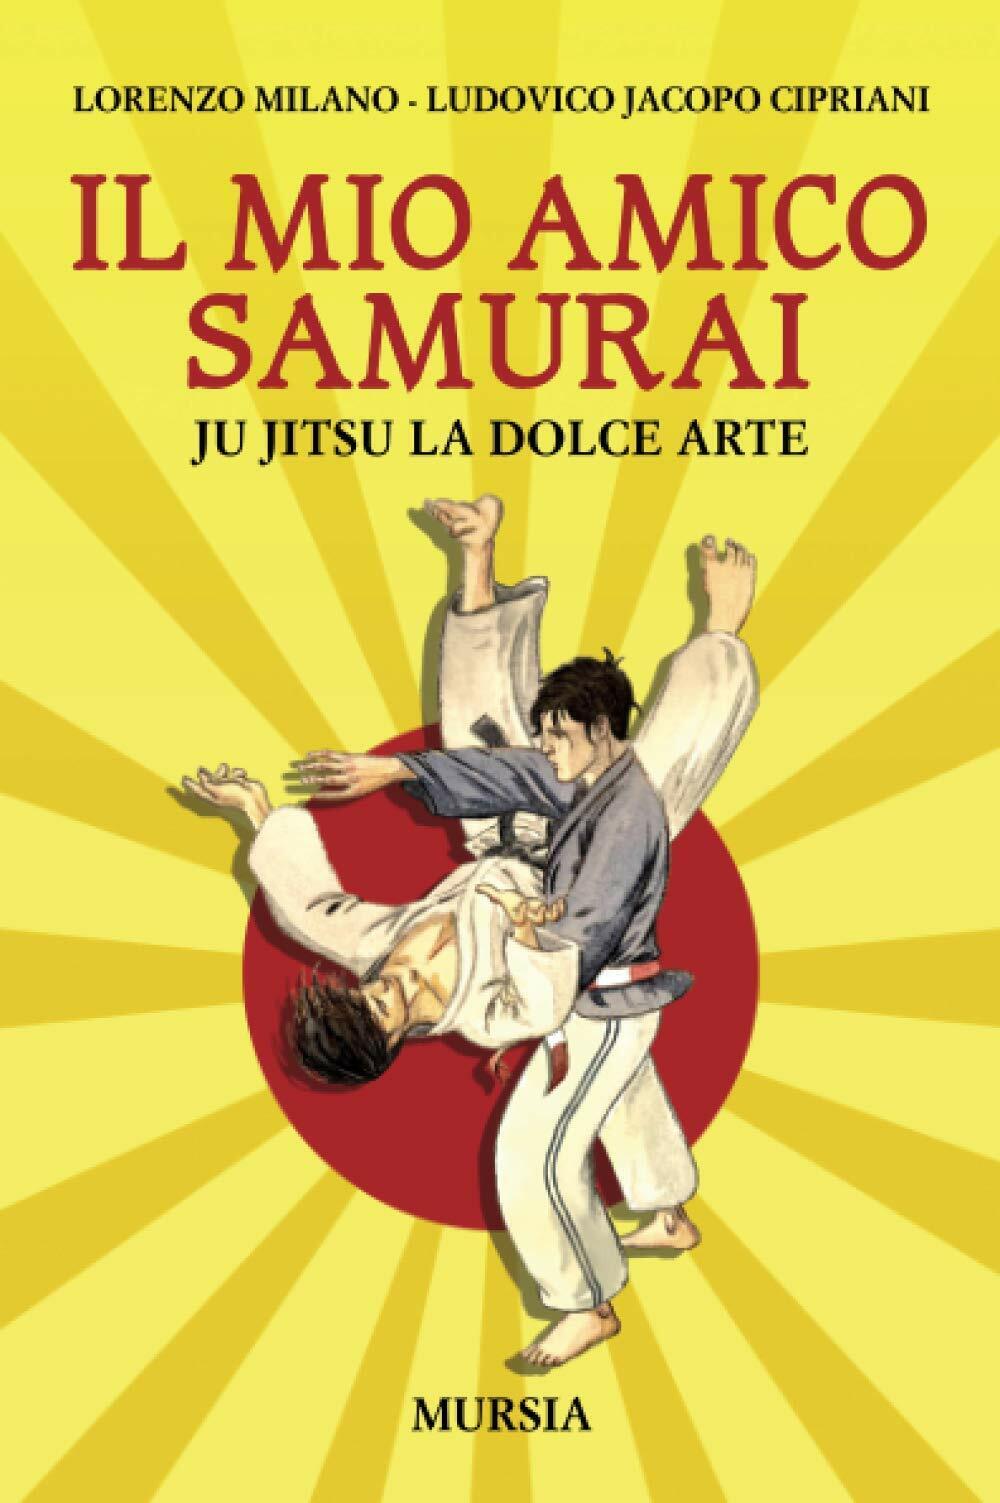 Il mio amico samurai: Ju Jitsu la dolce arte - Ugo Mursia Editore, 2021 libro usato